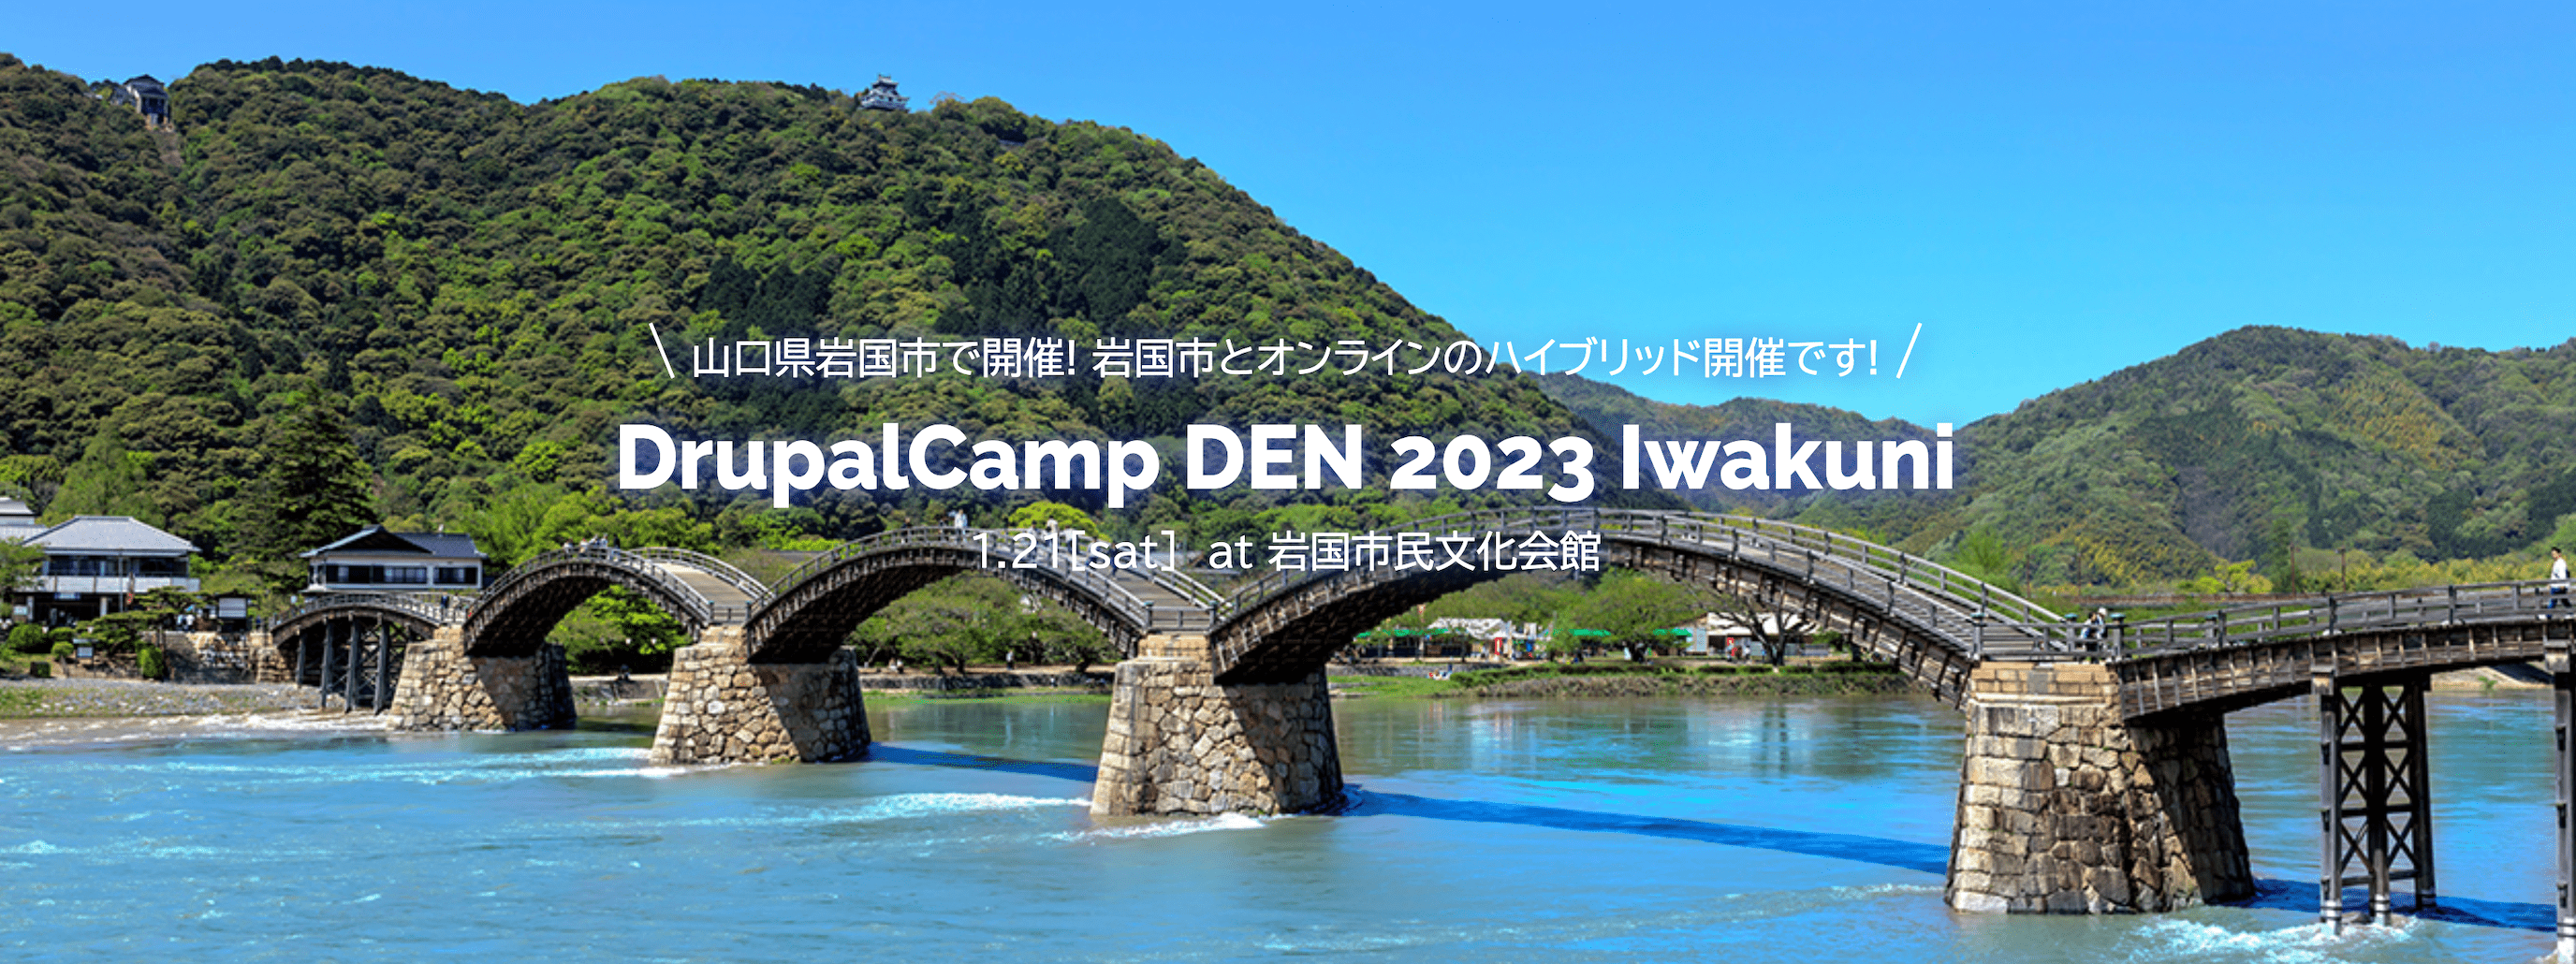 画像: DrupalCamp DEN 2023 Iwakuni